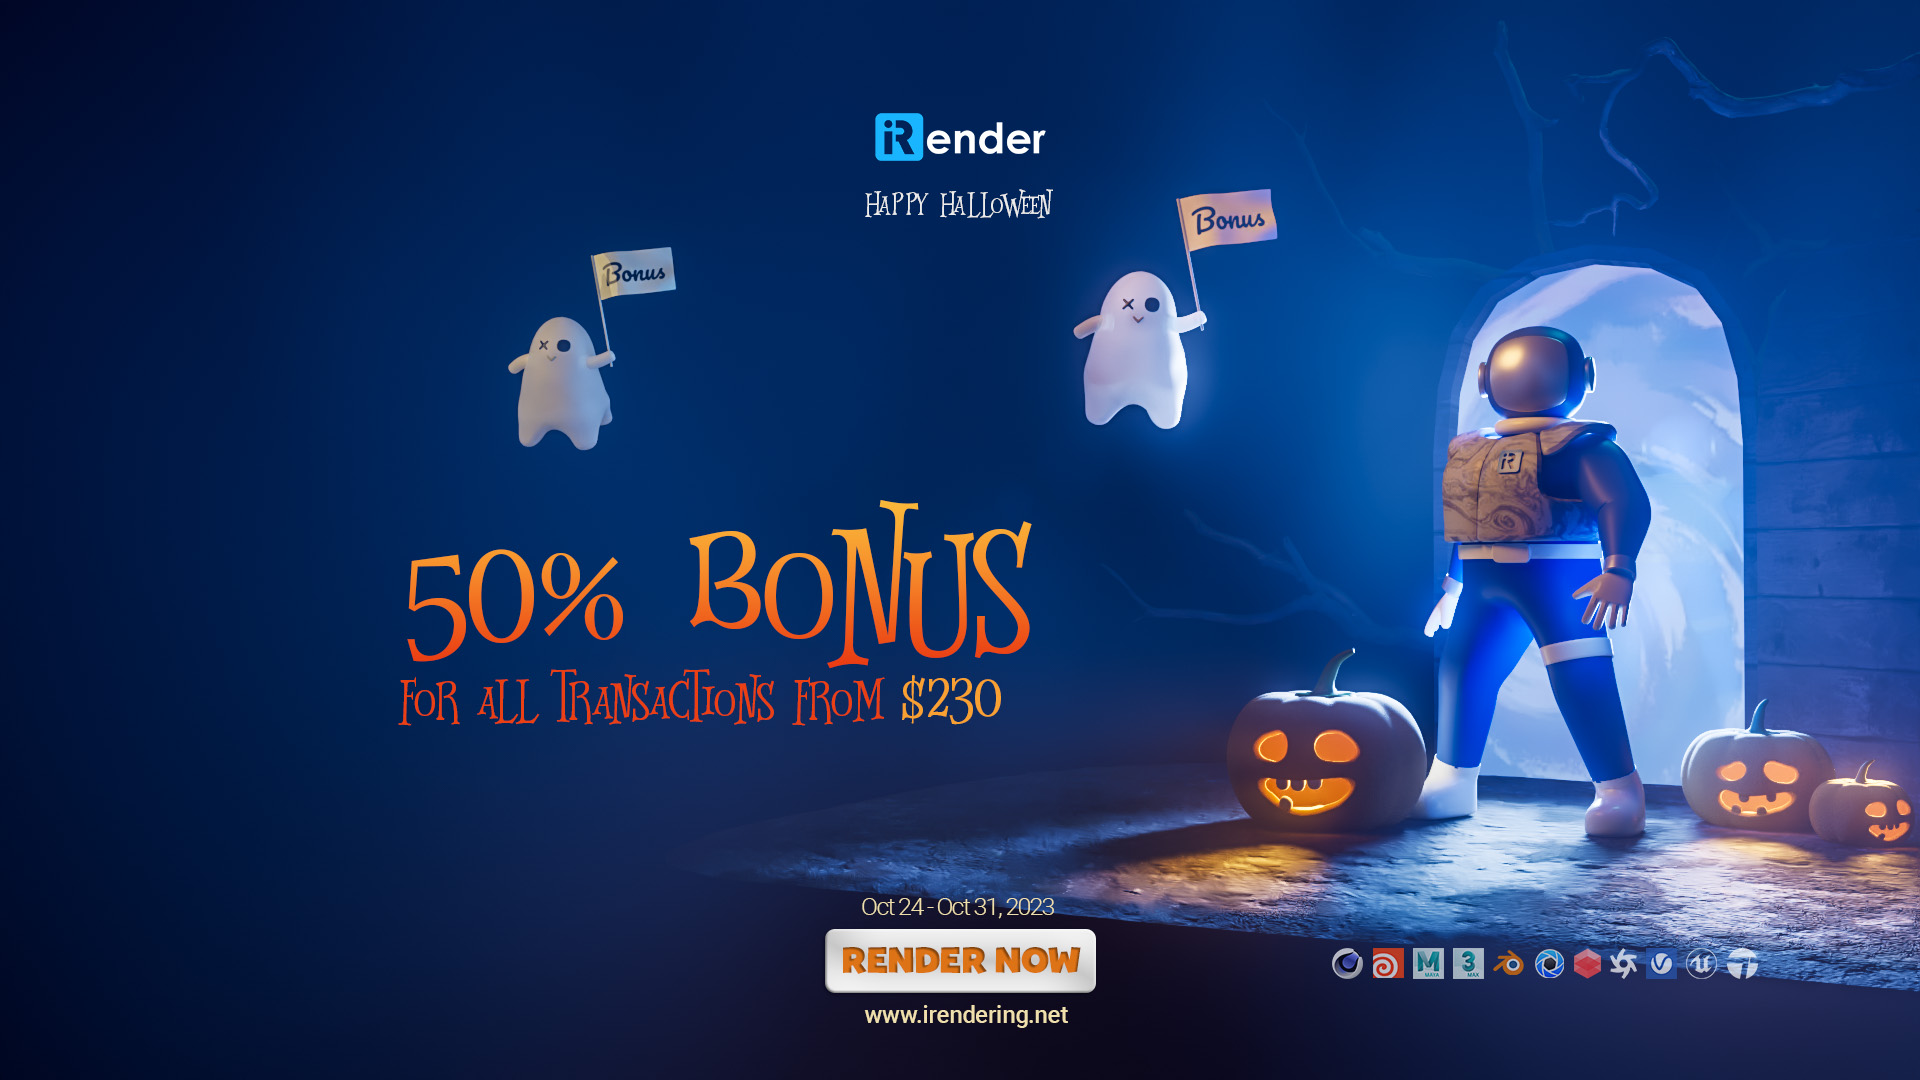 iRender Halloween promotions